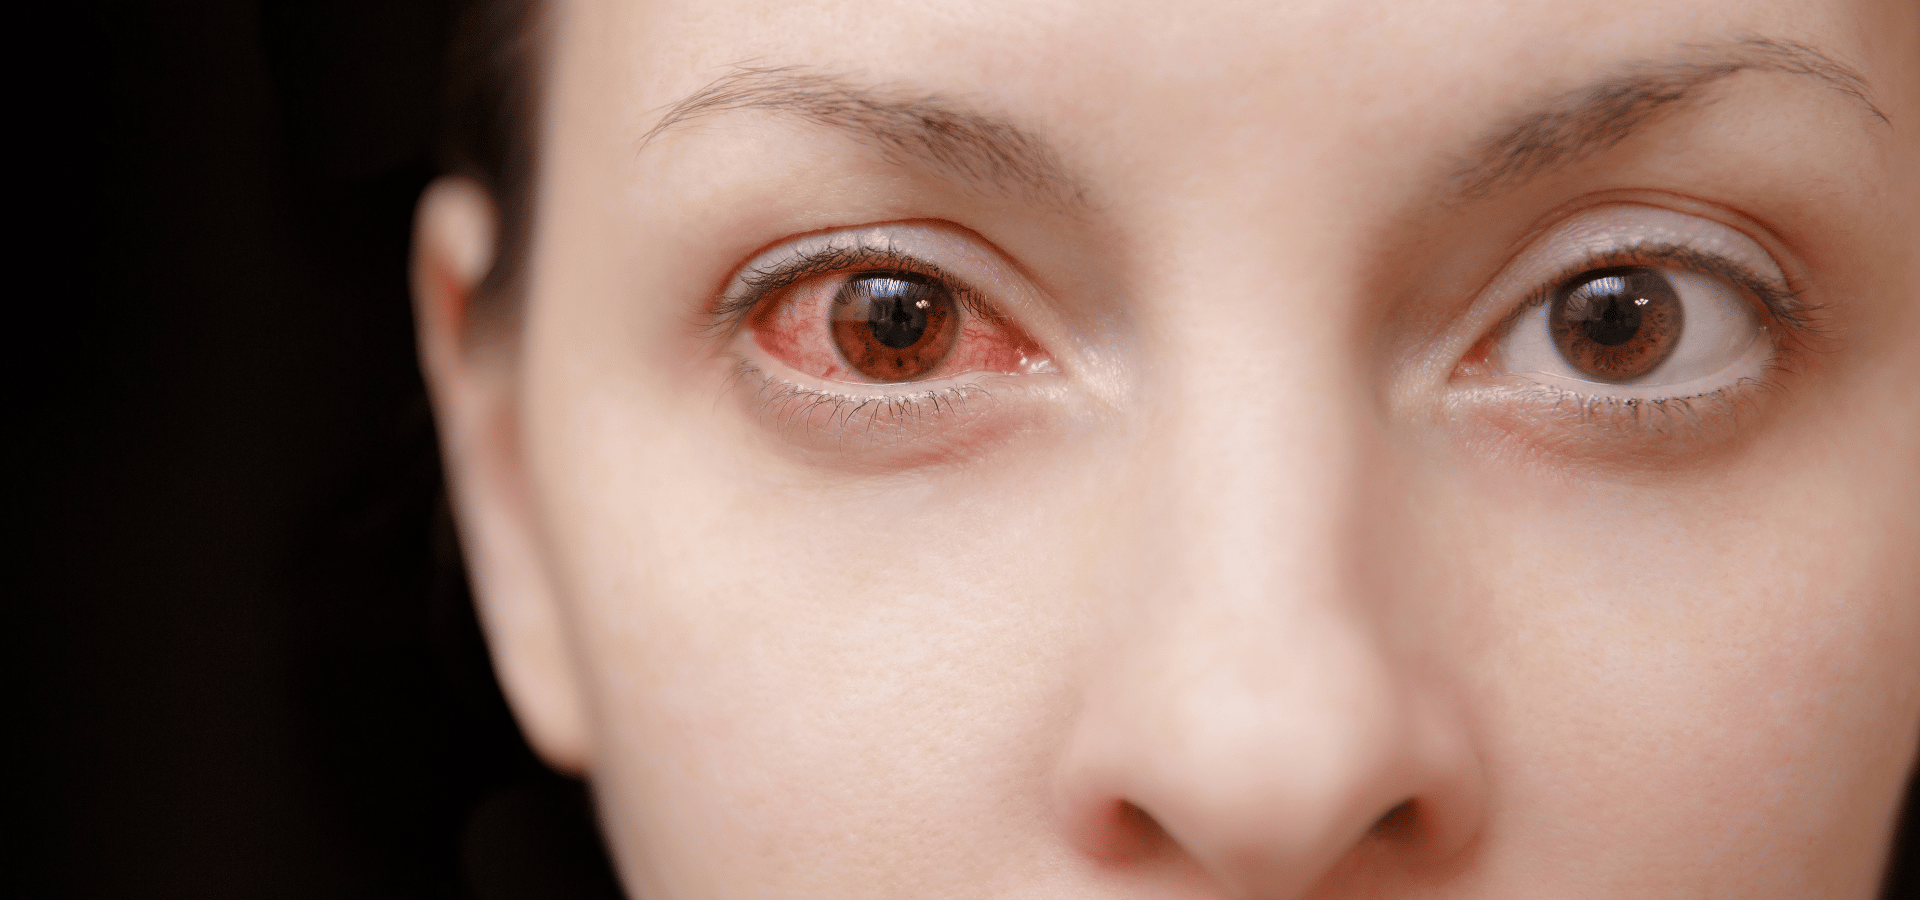 ¿Cuáles son las 10 enfermedades de la vista más comunes? » enfermedades de la vista